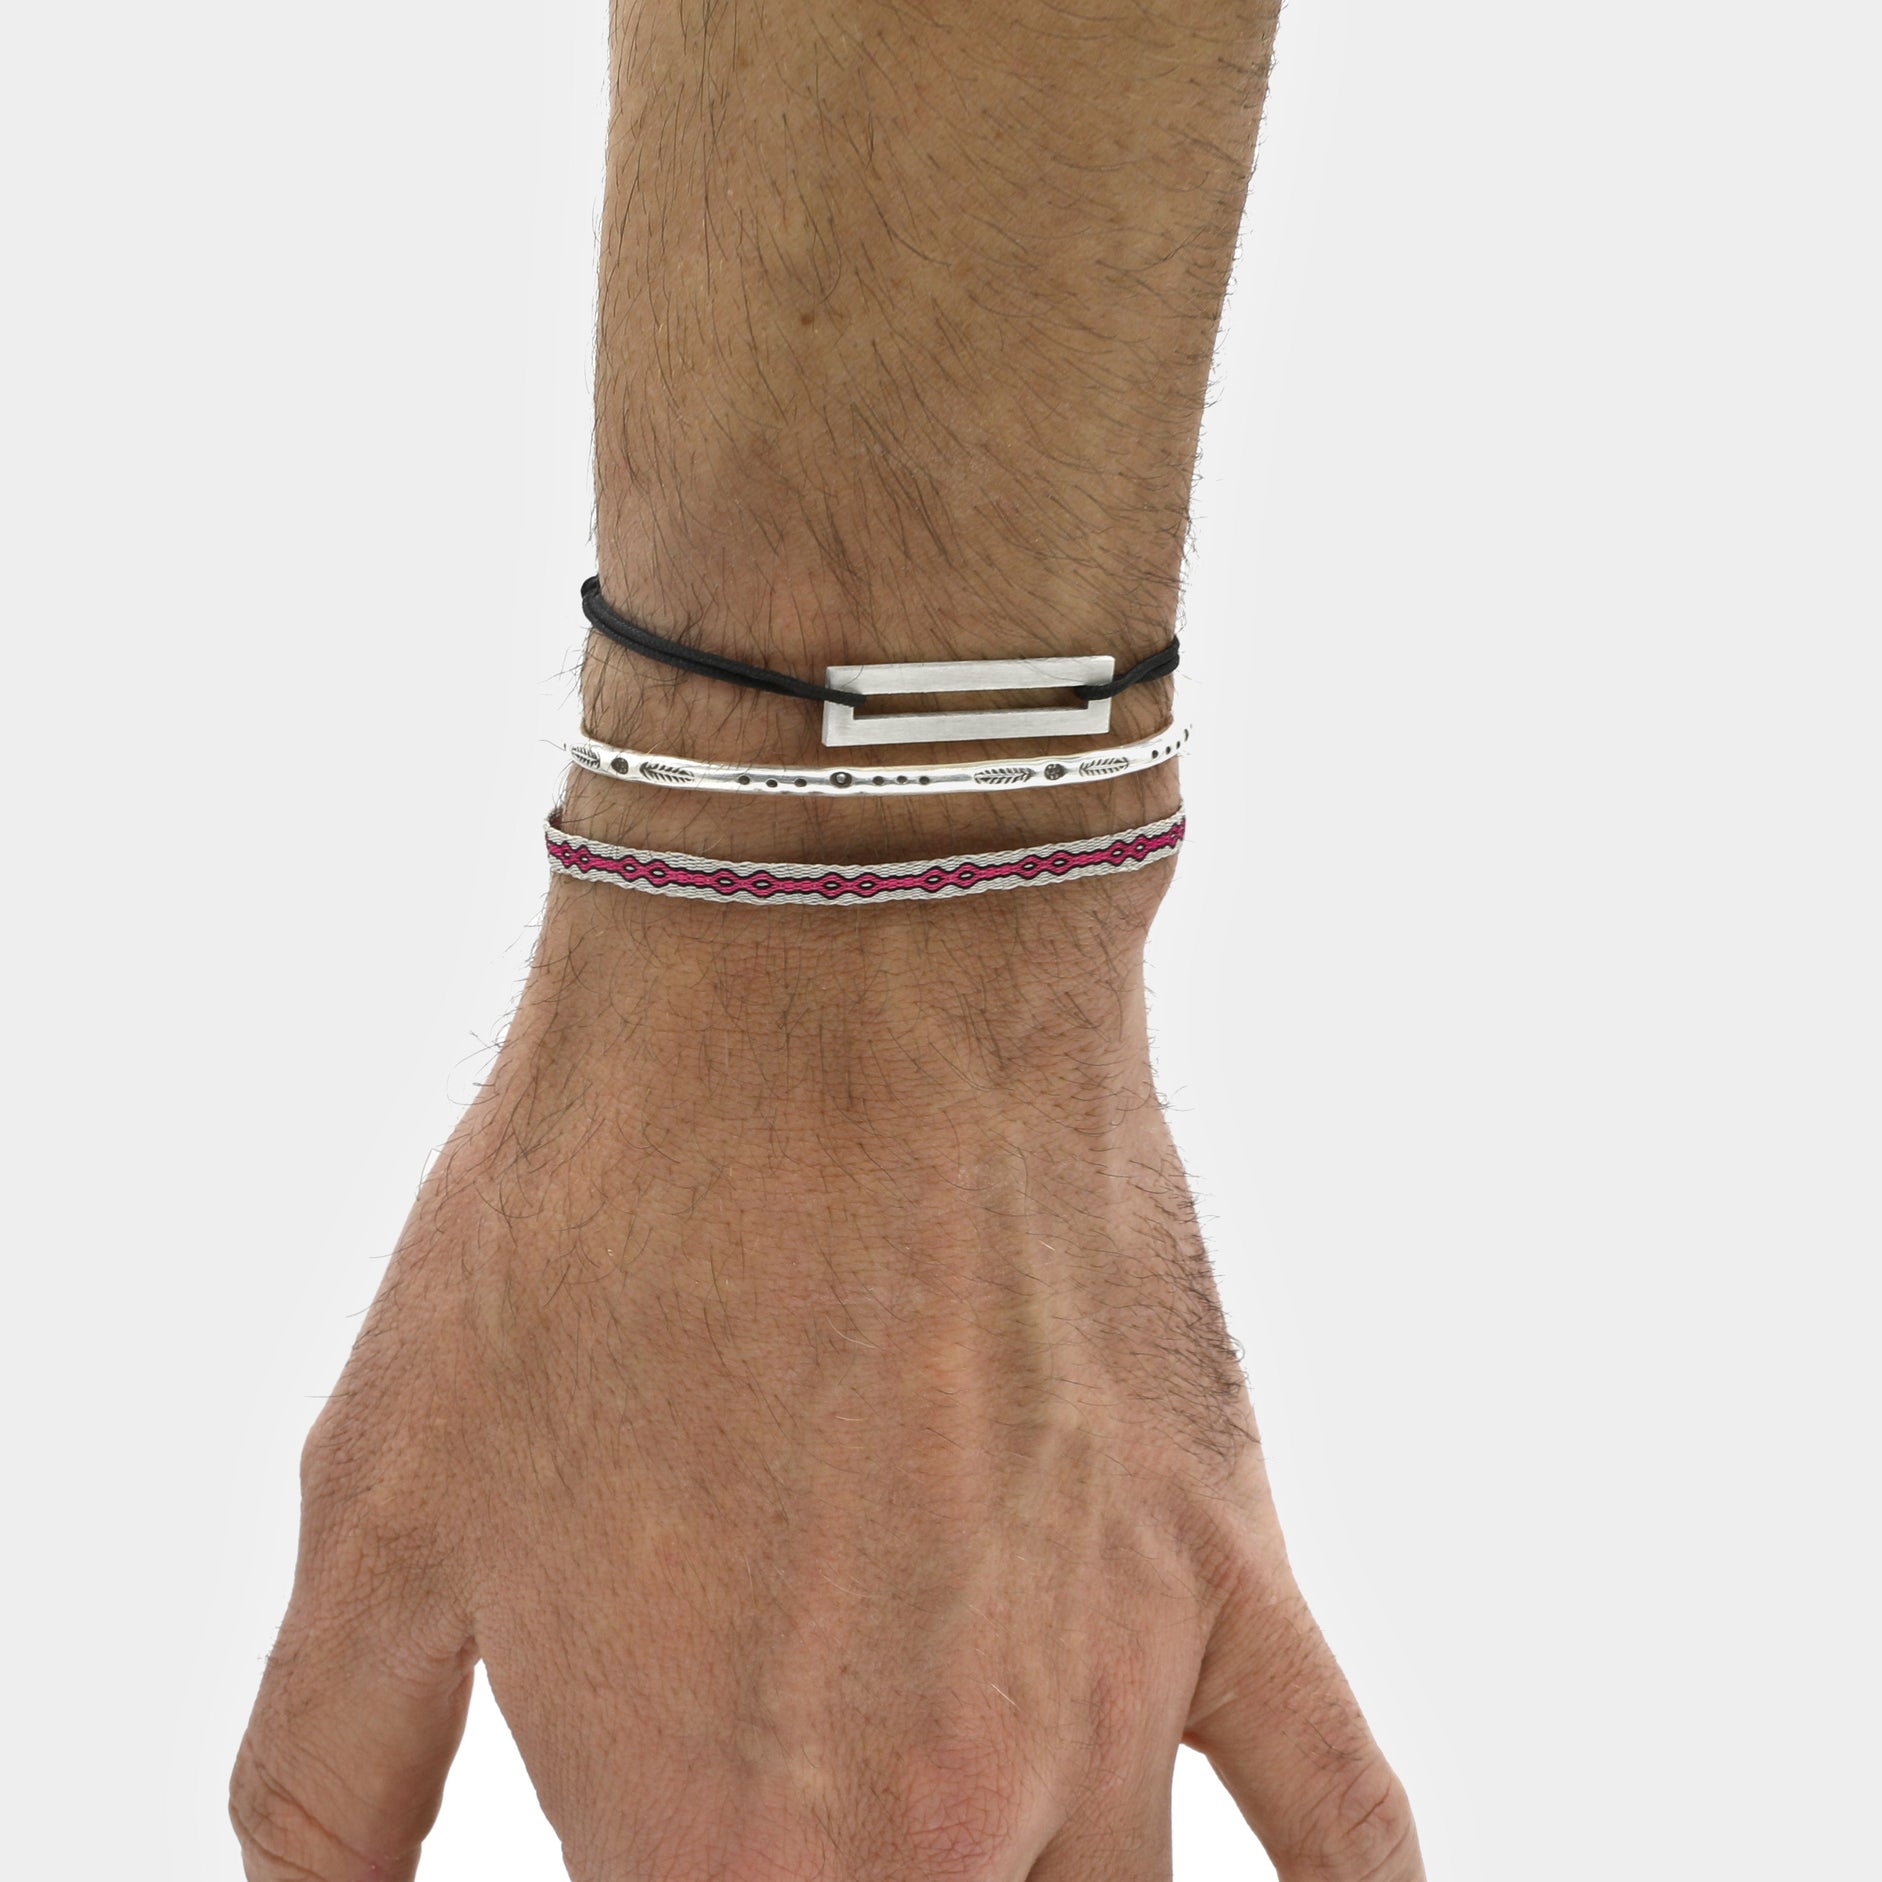 Rope Bracelet With Sterling Silver Bar (Black)-Jewelry-Kompsós